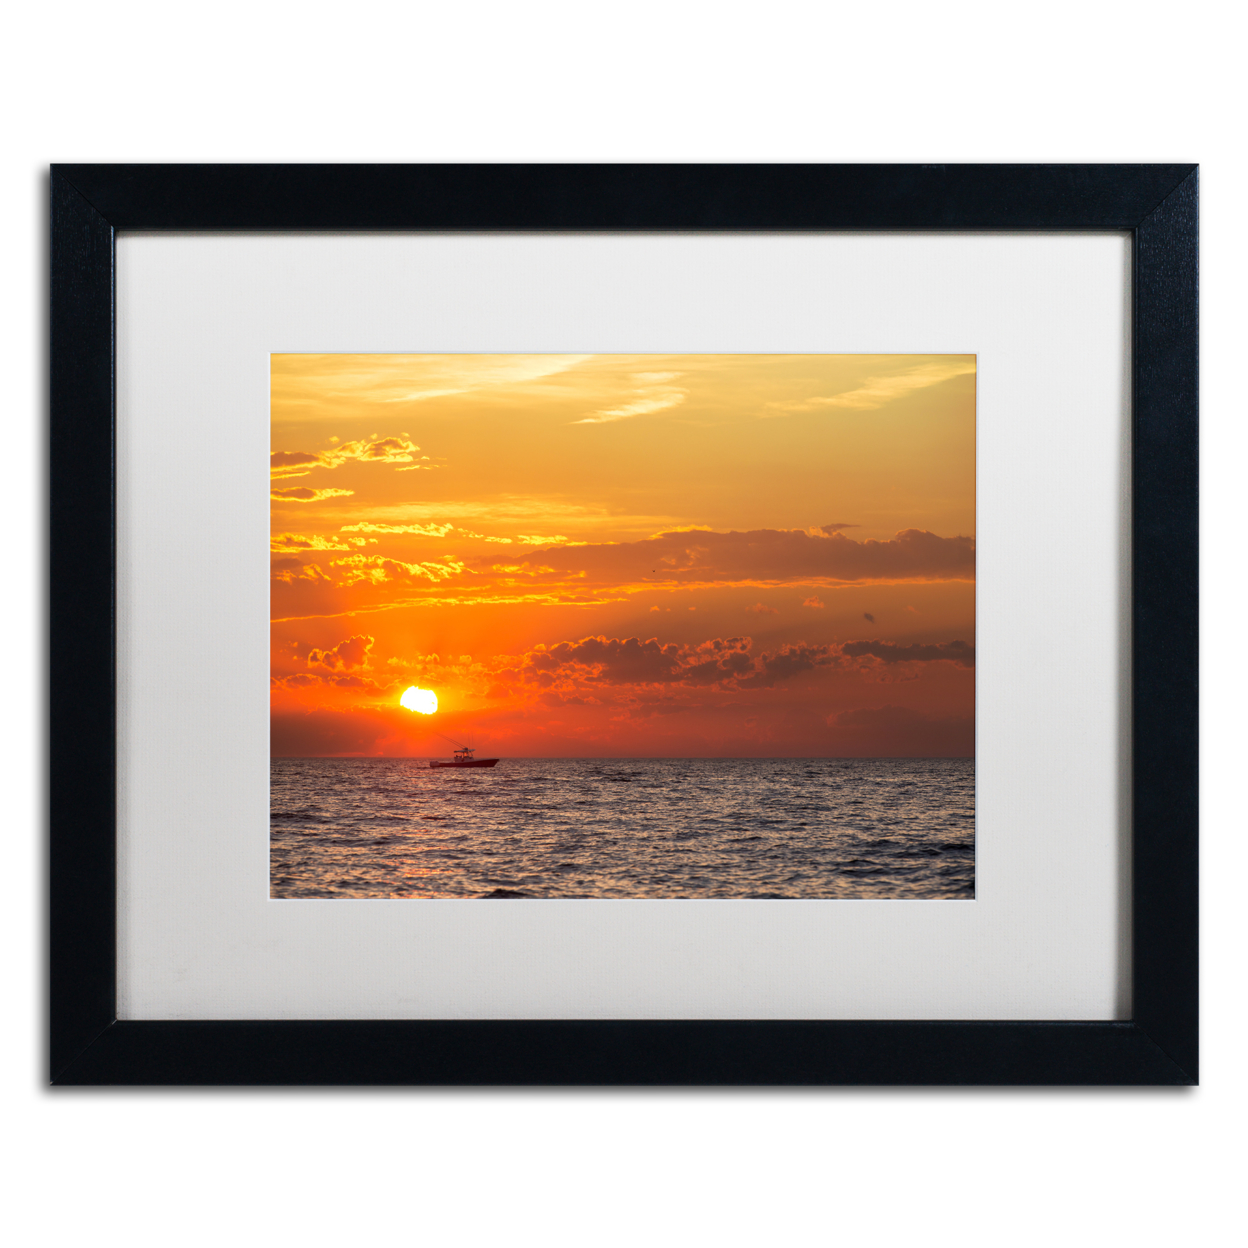 Jason Shaffer 'Fishing Boat Sunset' Black Wooden Framed Art 18 X 22 Inches